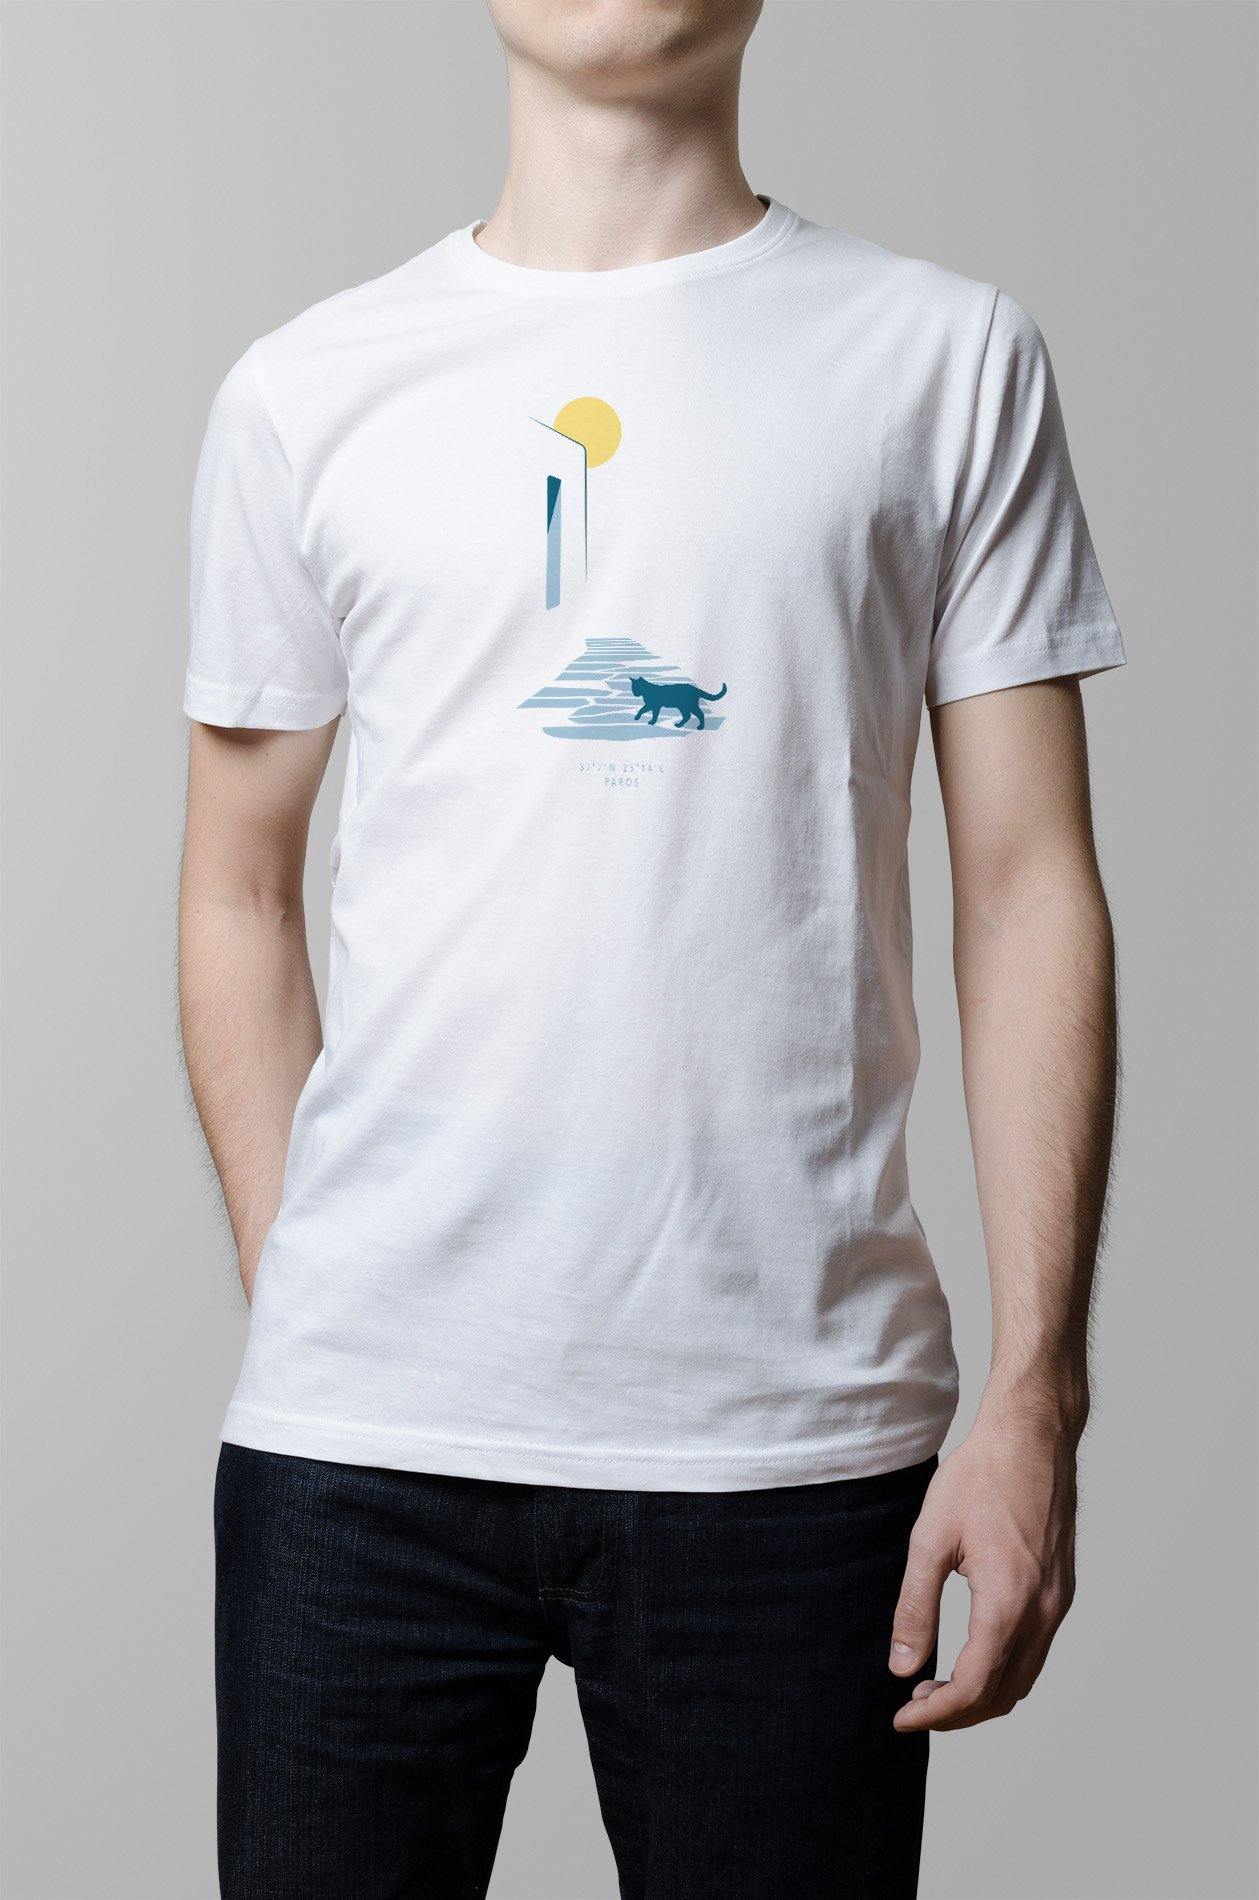 Cycladic Cat T-Shirt - YOU & ISLAND